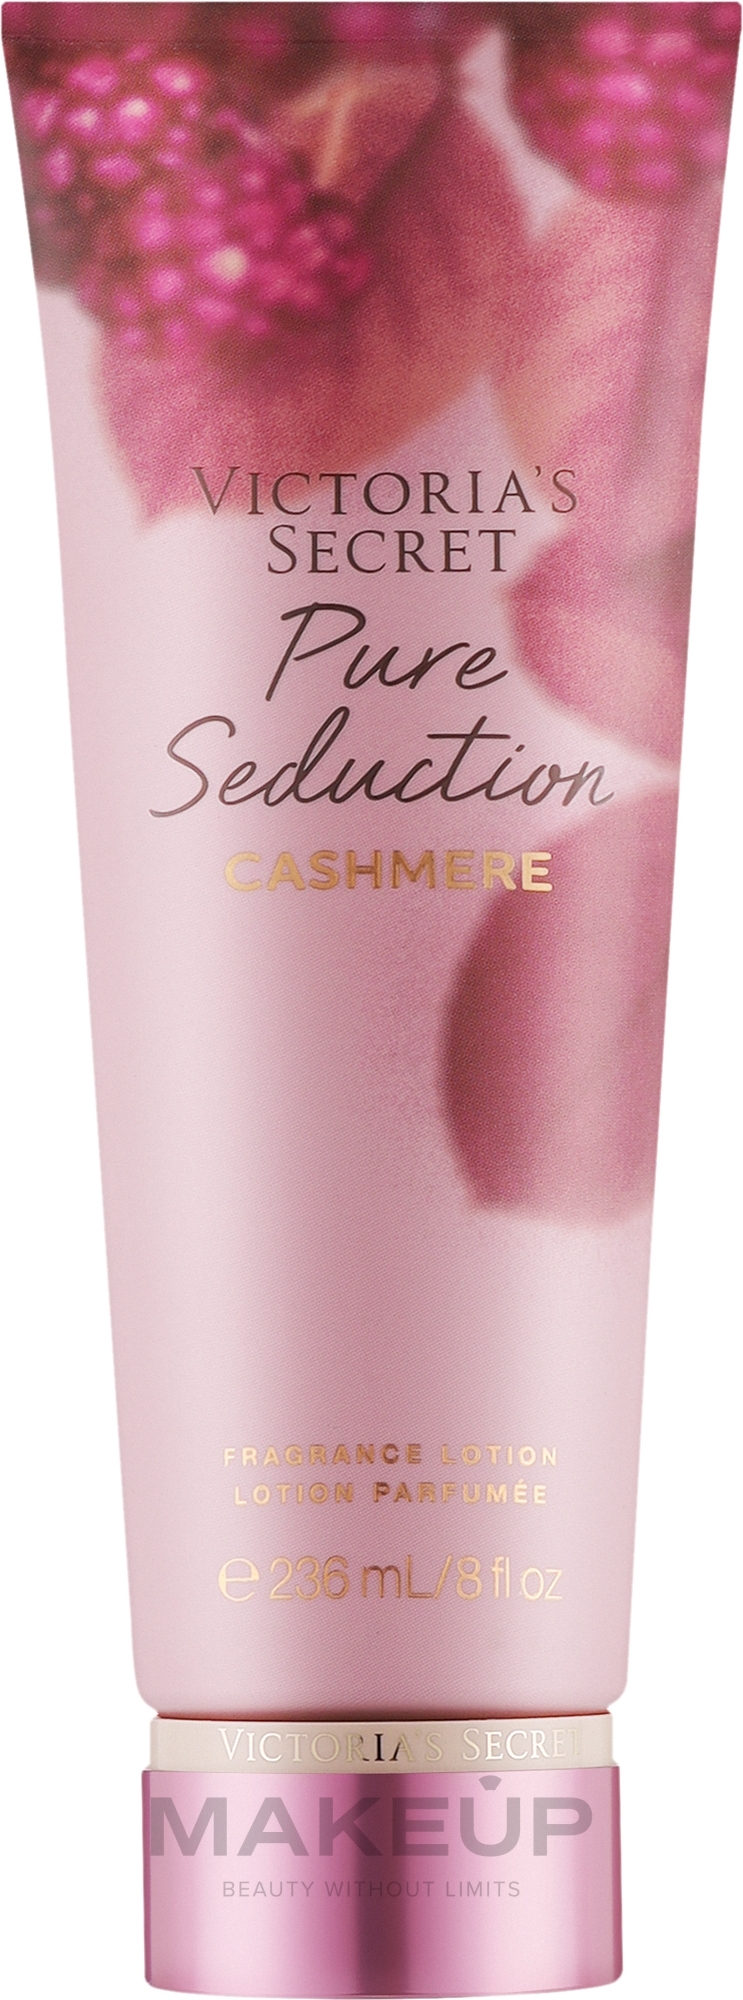 Victoria's Secret Pure Seduction Cashmere - Лосьон для тела — фото 236ml